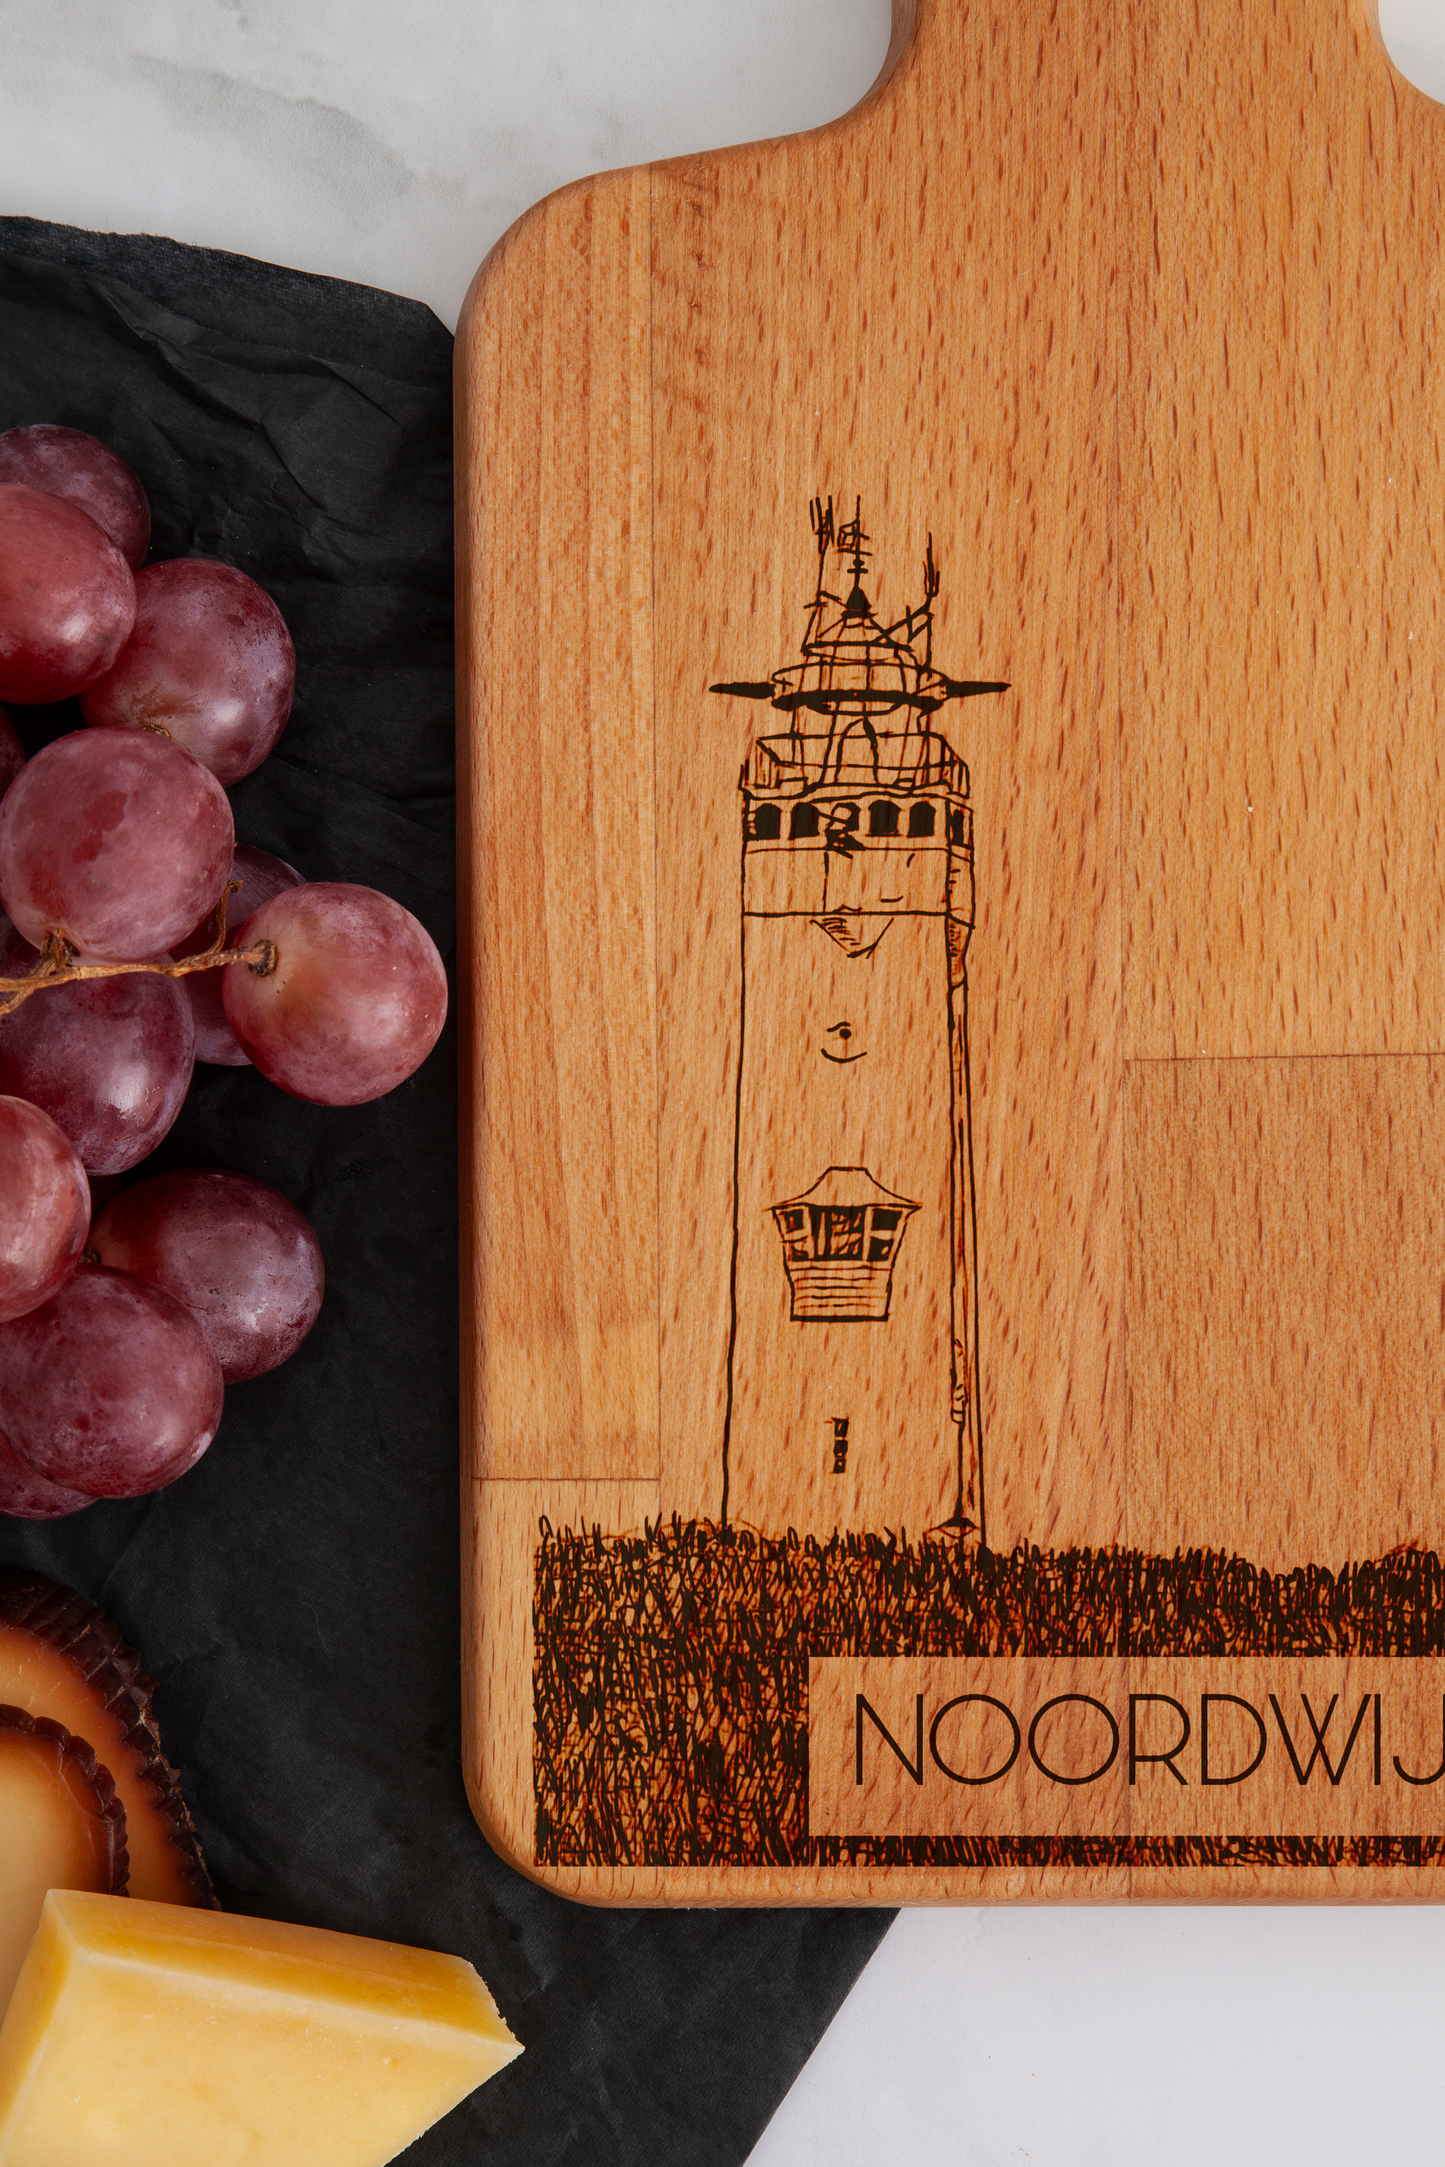 Noordwijk, Vuurtoren, cheese board, close-up